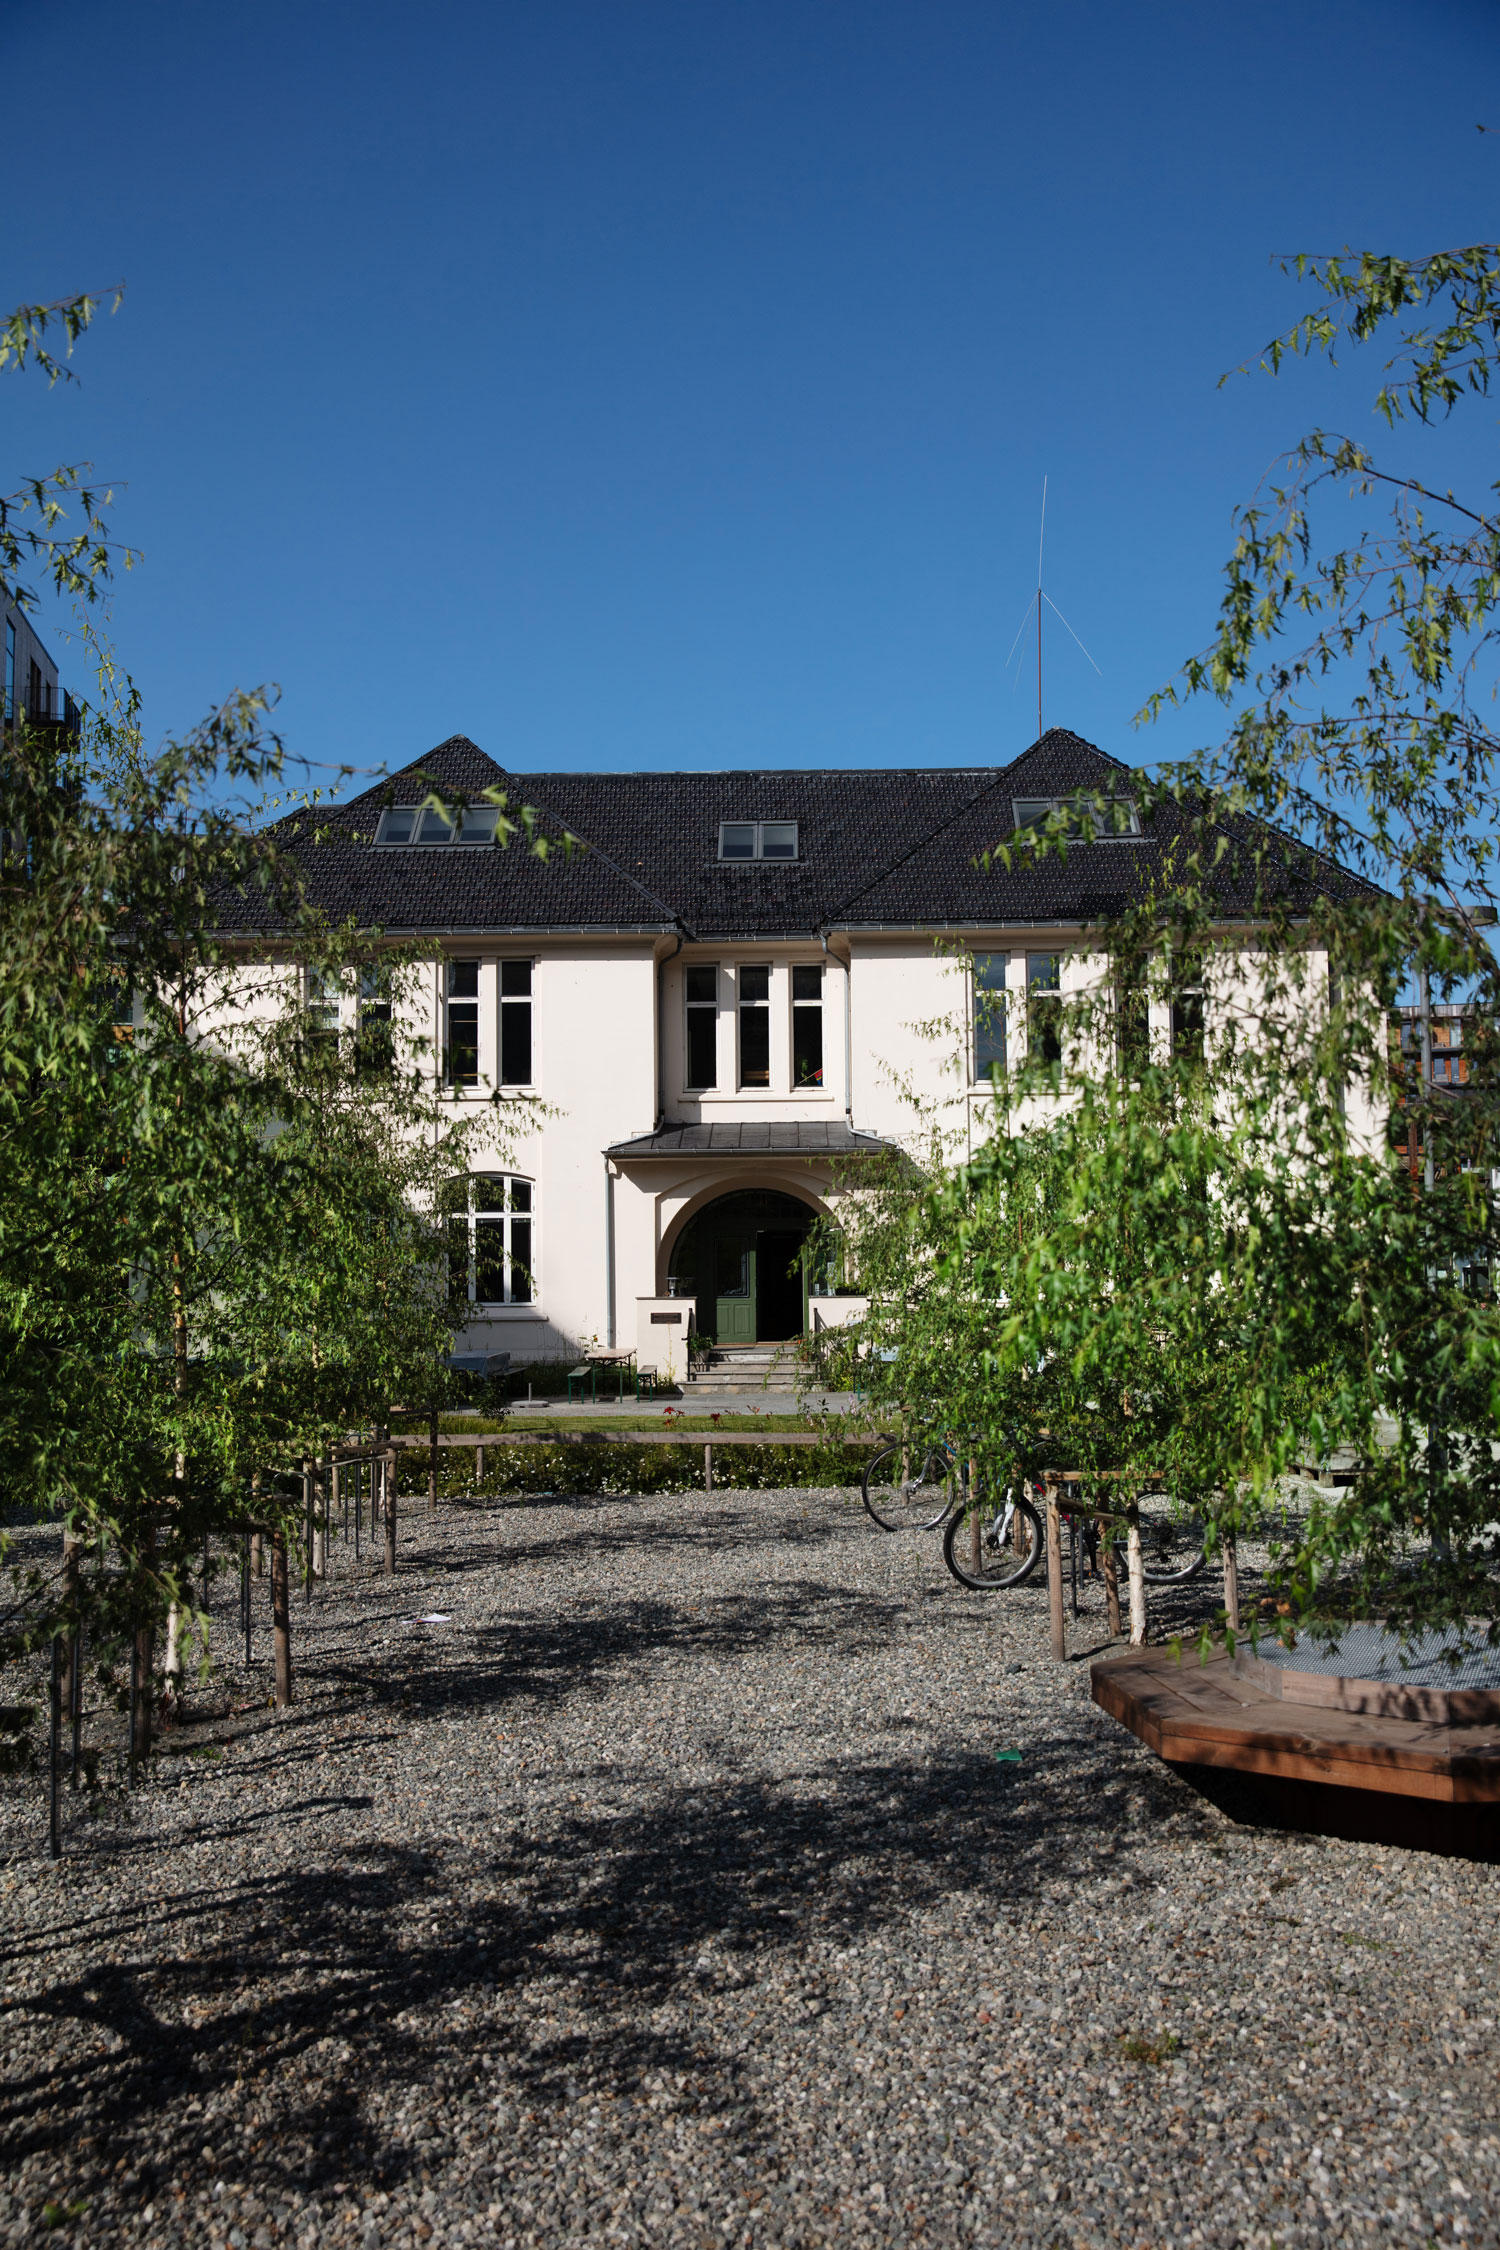 Geitmyra kultursenter for barn ligger i det flotte Finnes-bygget på Lilleby. Foto: Geir Mogen.